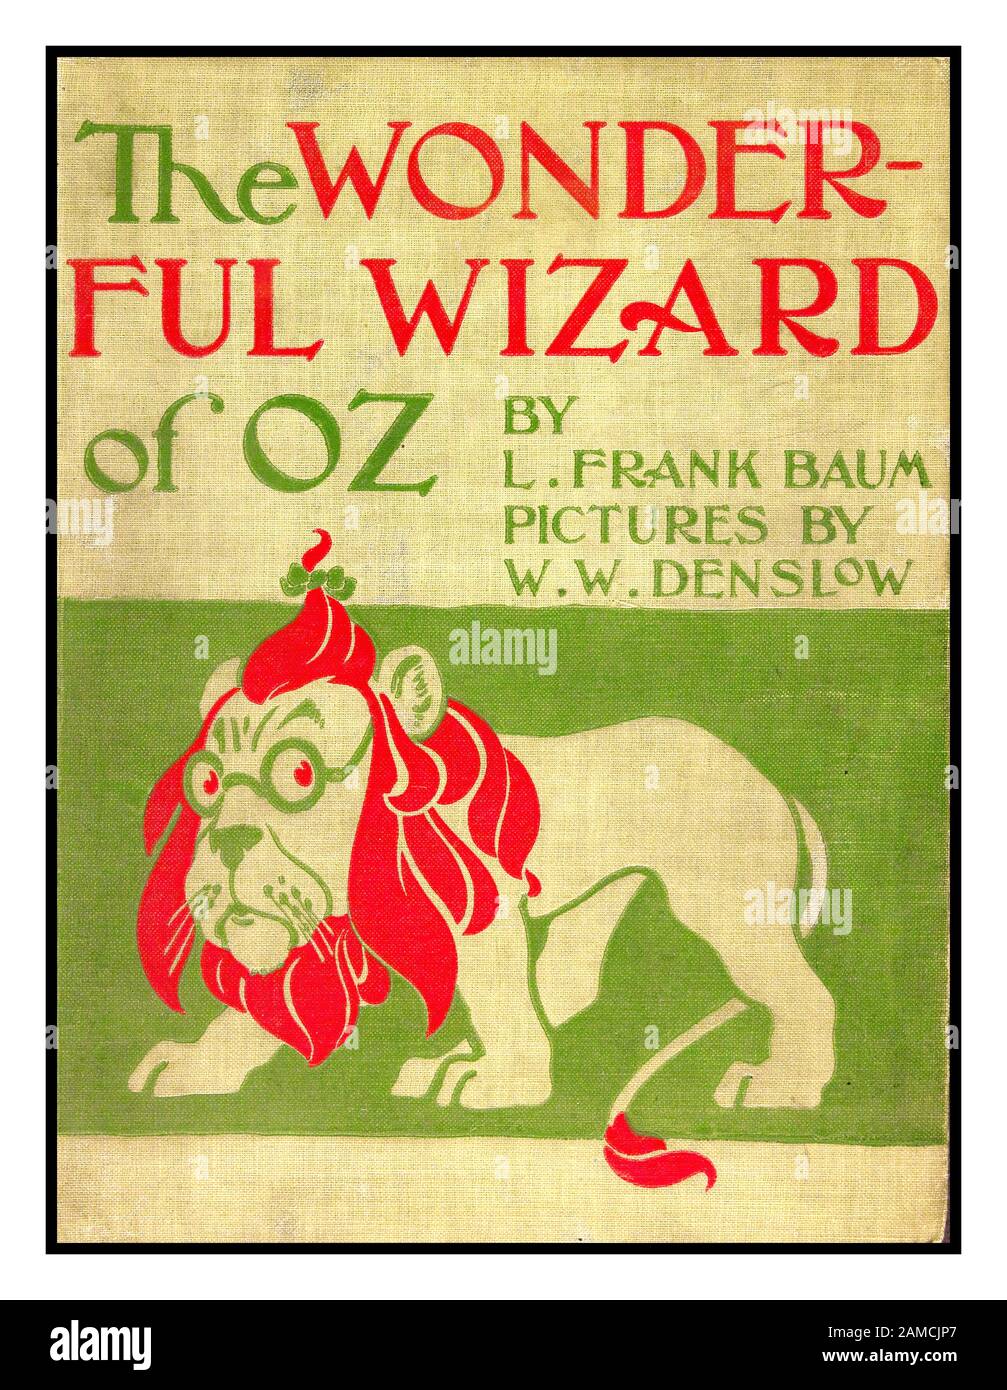 ASSISTANT DE OZ couverture du livre historique original de 1899 «The Wonderful Wizard of Oz» de l'auteur L. Frank Baum, (Lyman Frank), 1856-1919. Illustrations du créateur W. W.Denslow, (William Wallace), 1856-1915, publié Chicago ; New York : G.M. Hill Co. C1899 Banque D'Images